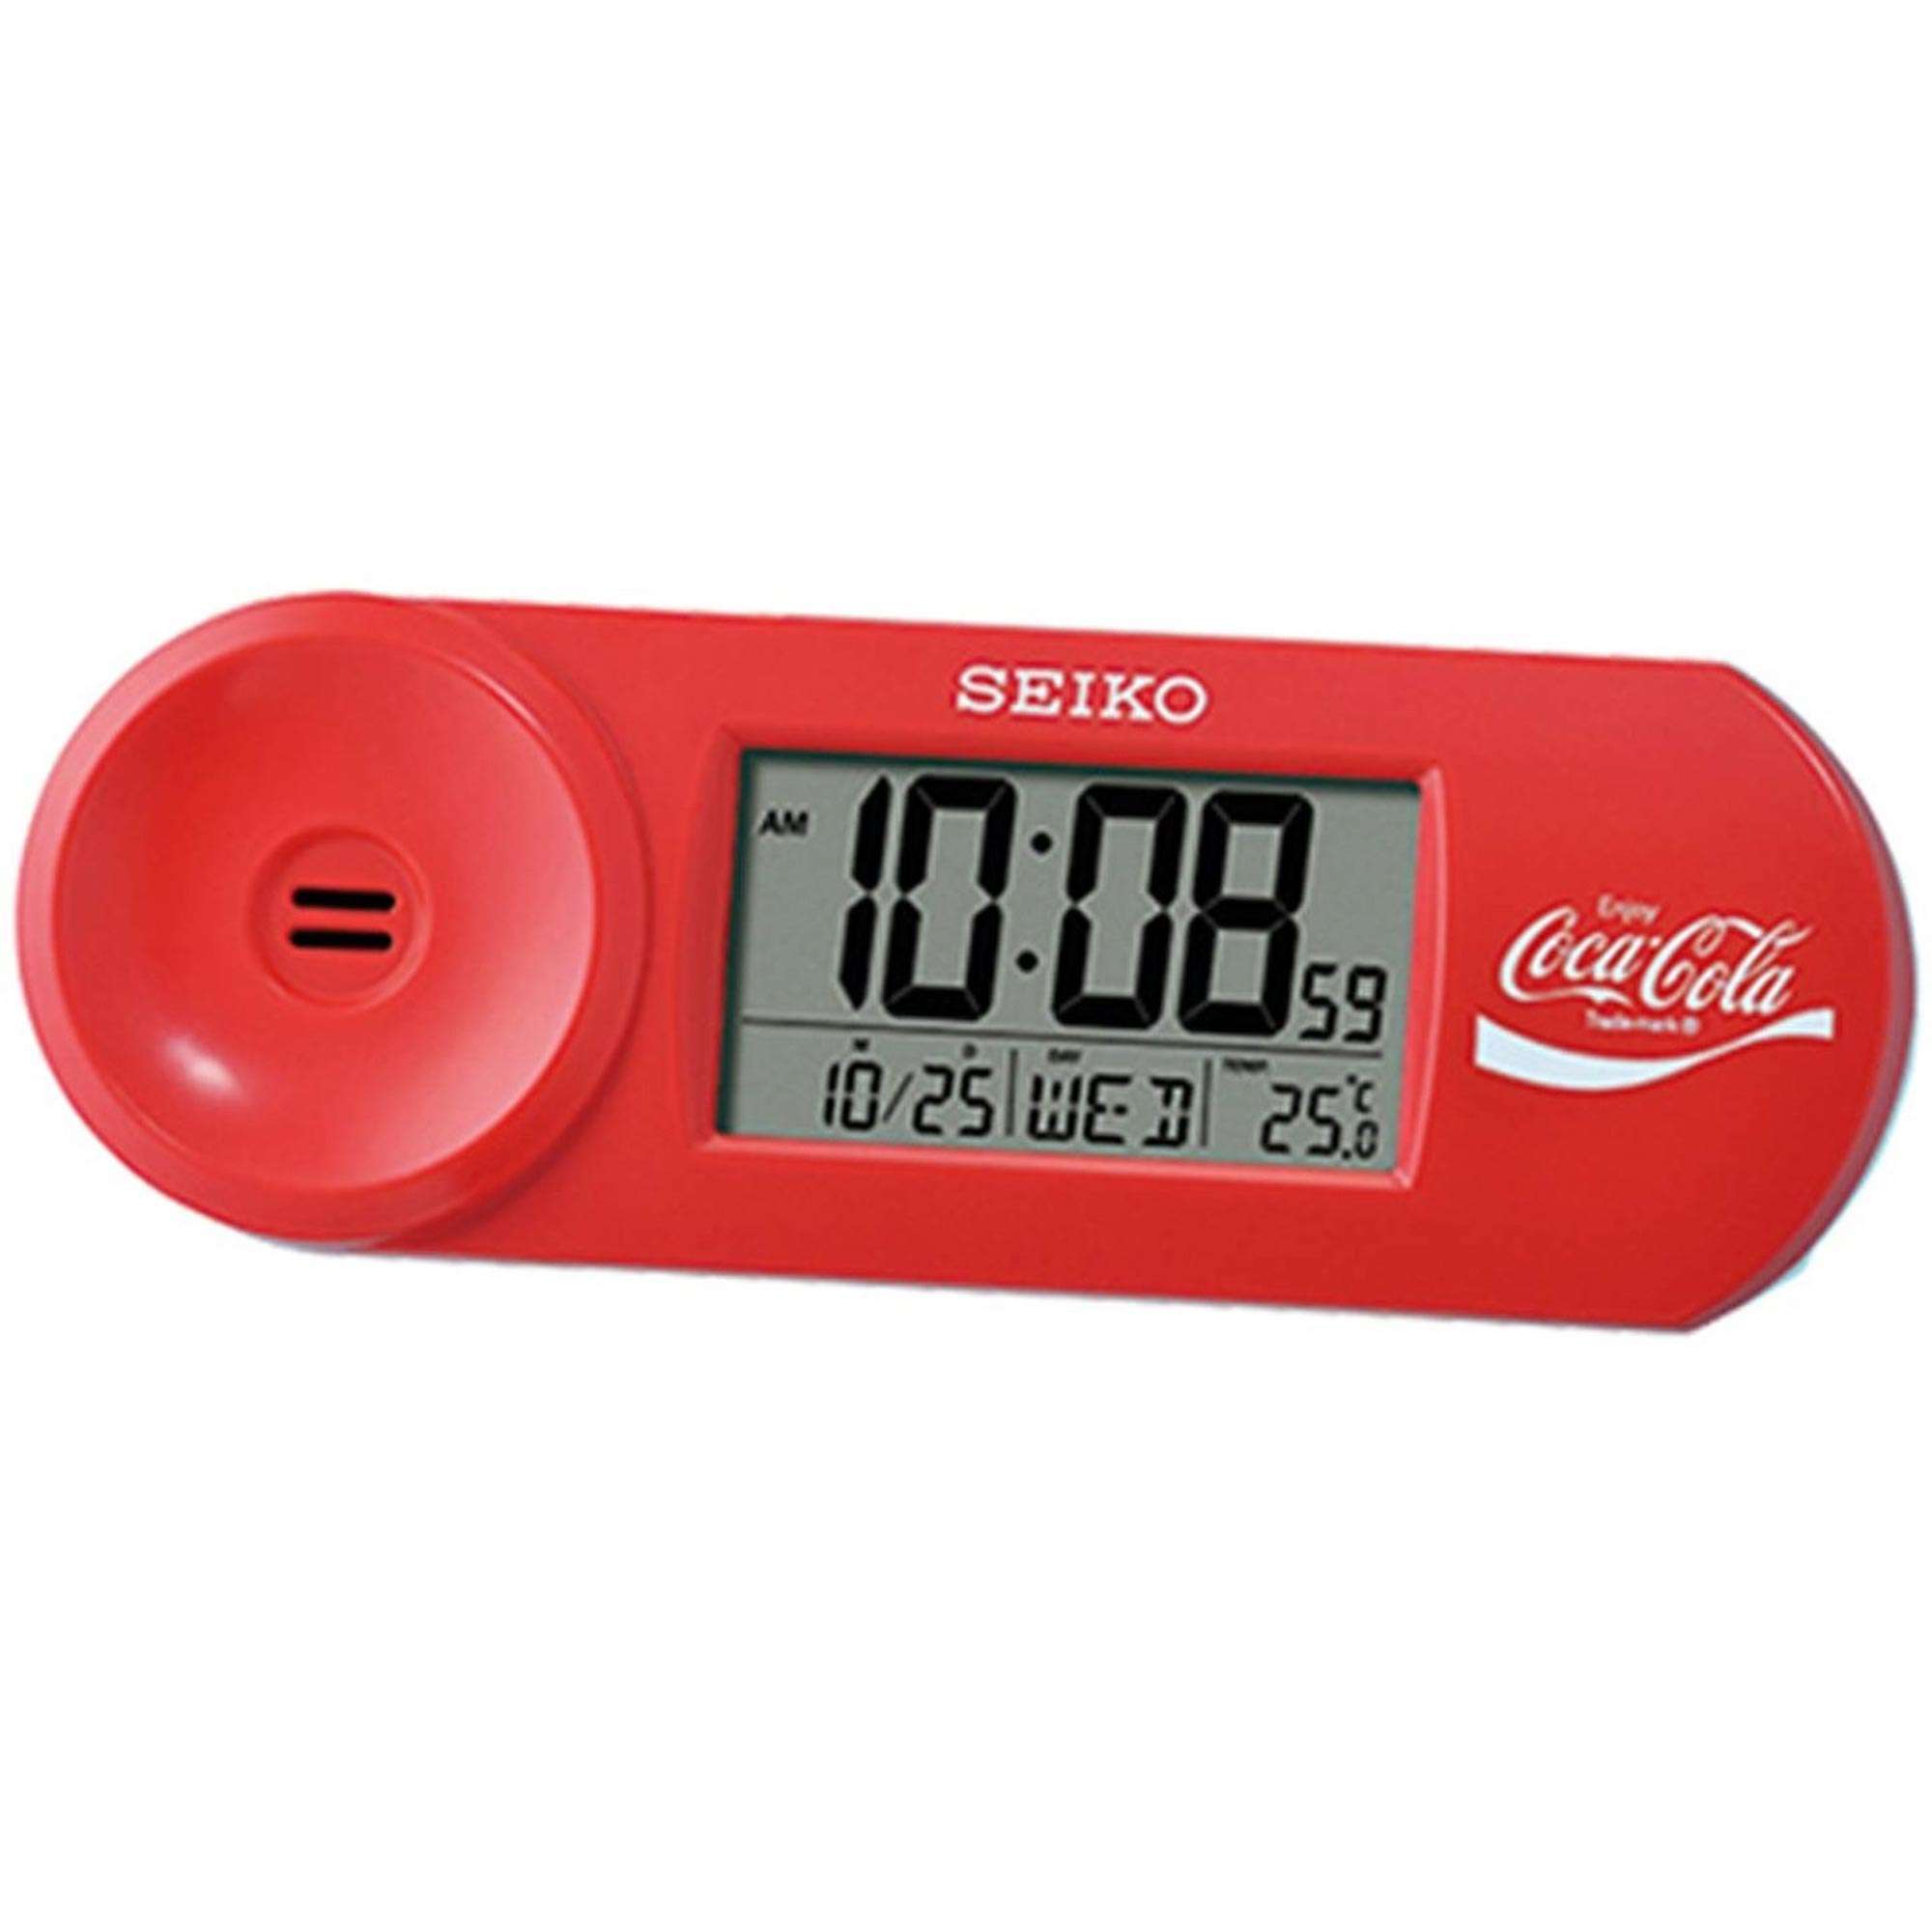 Seiko Coca Cola Quartz Digital Alarm Clock QHL902R